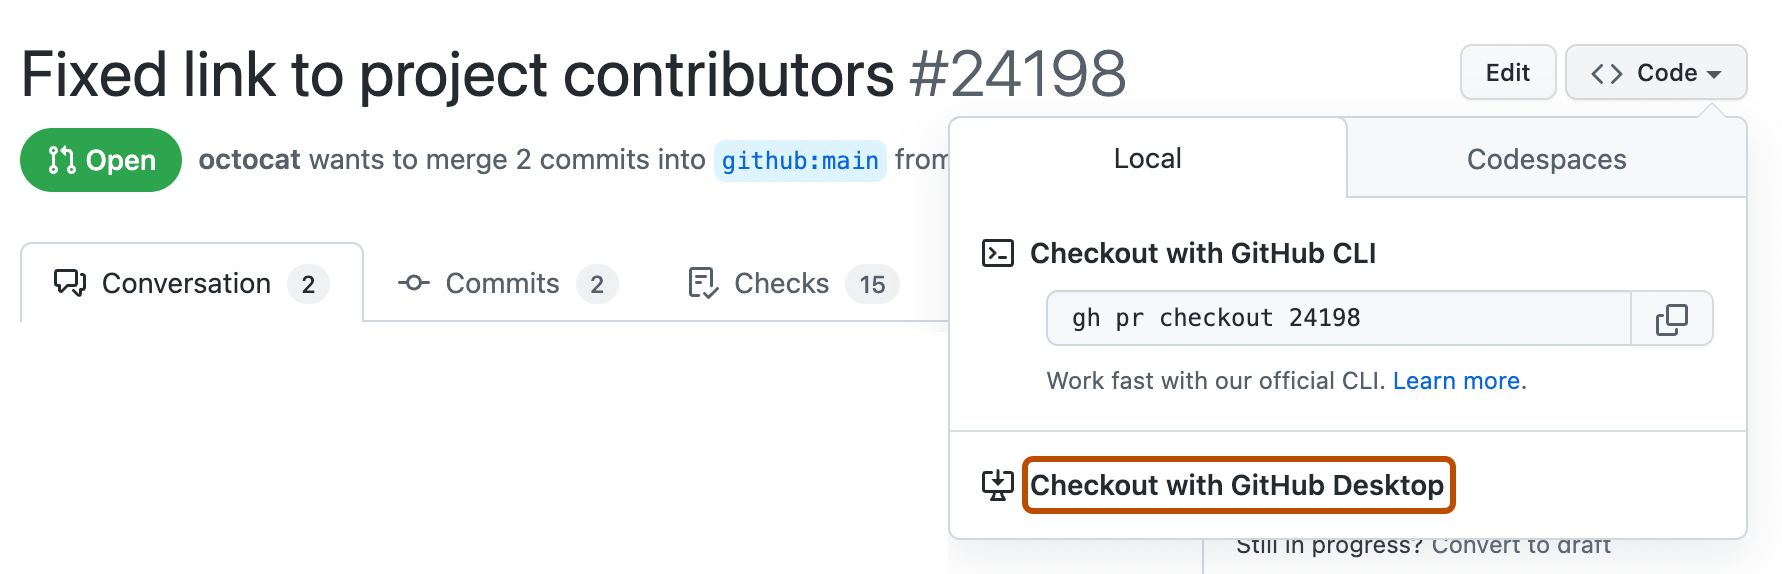 GitHub での pull request のスクリーンショット。 [コード] ドロップダウン メニューが展開され、[GitHub Desktop でチェックアウト] というラベルのボタンがオレンジ色で囲まれています。